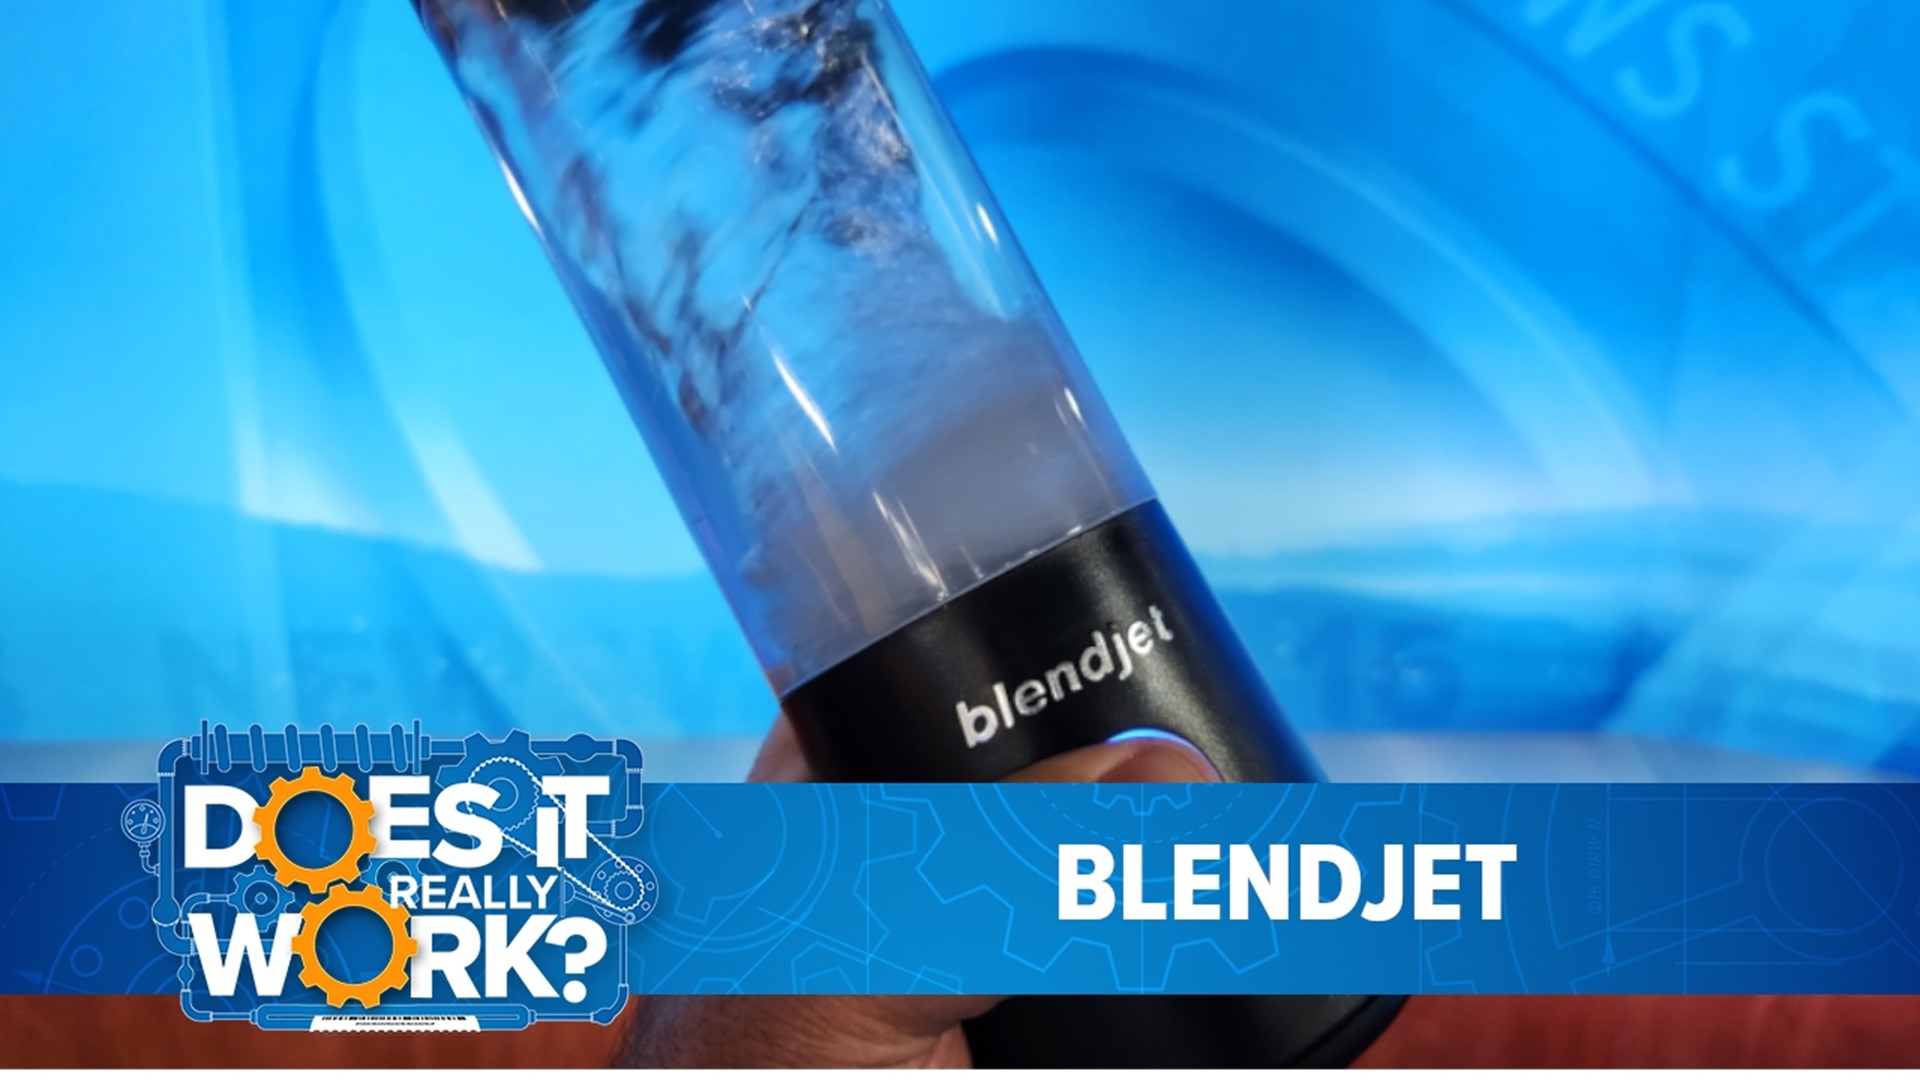 BlendJet Recalls Blenders Due to Fire, Laceration Risk